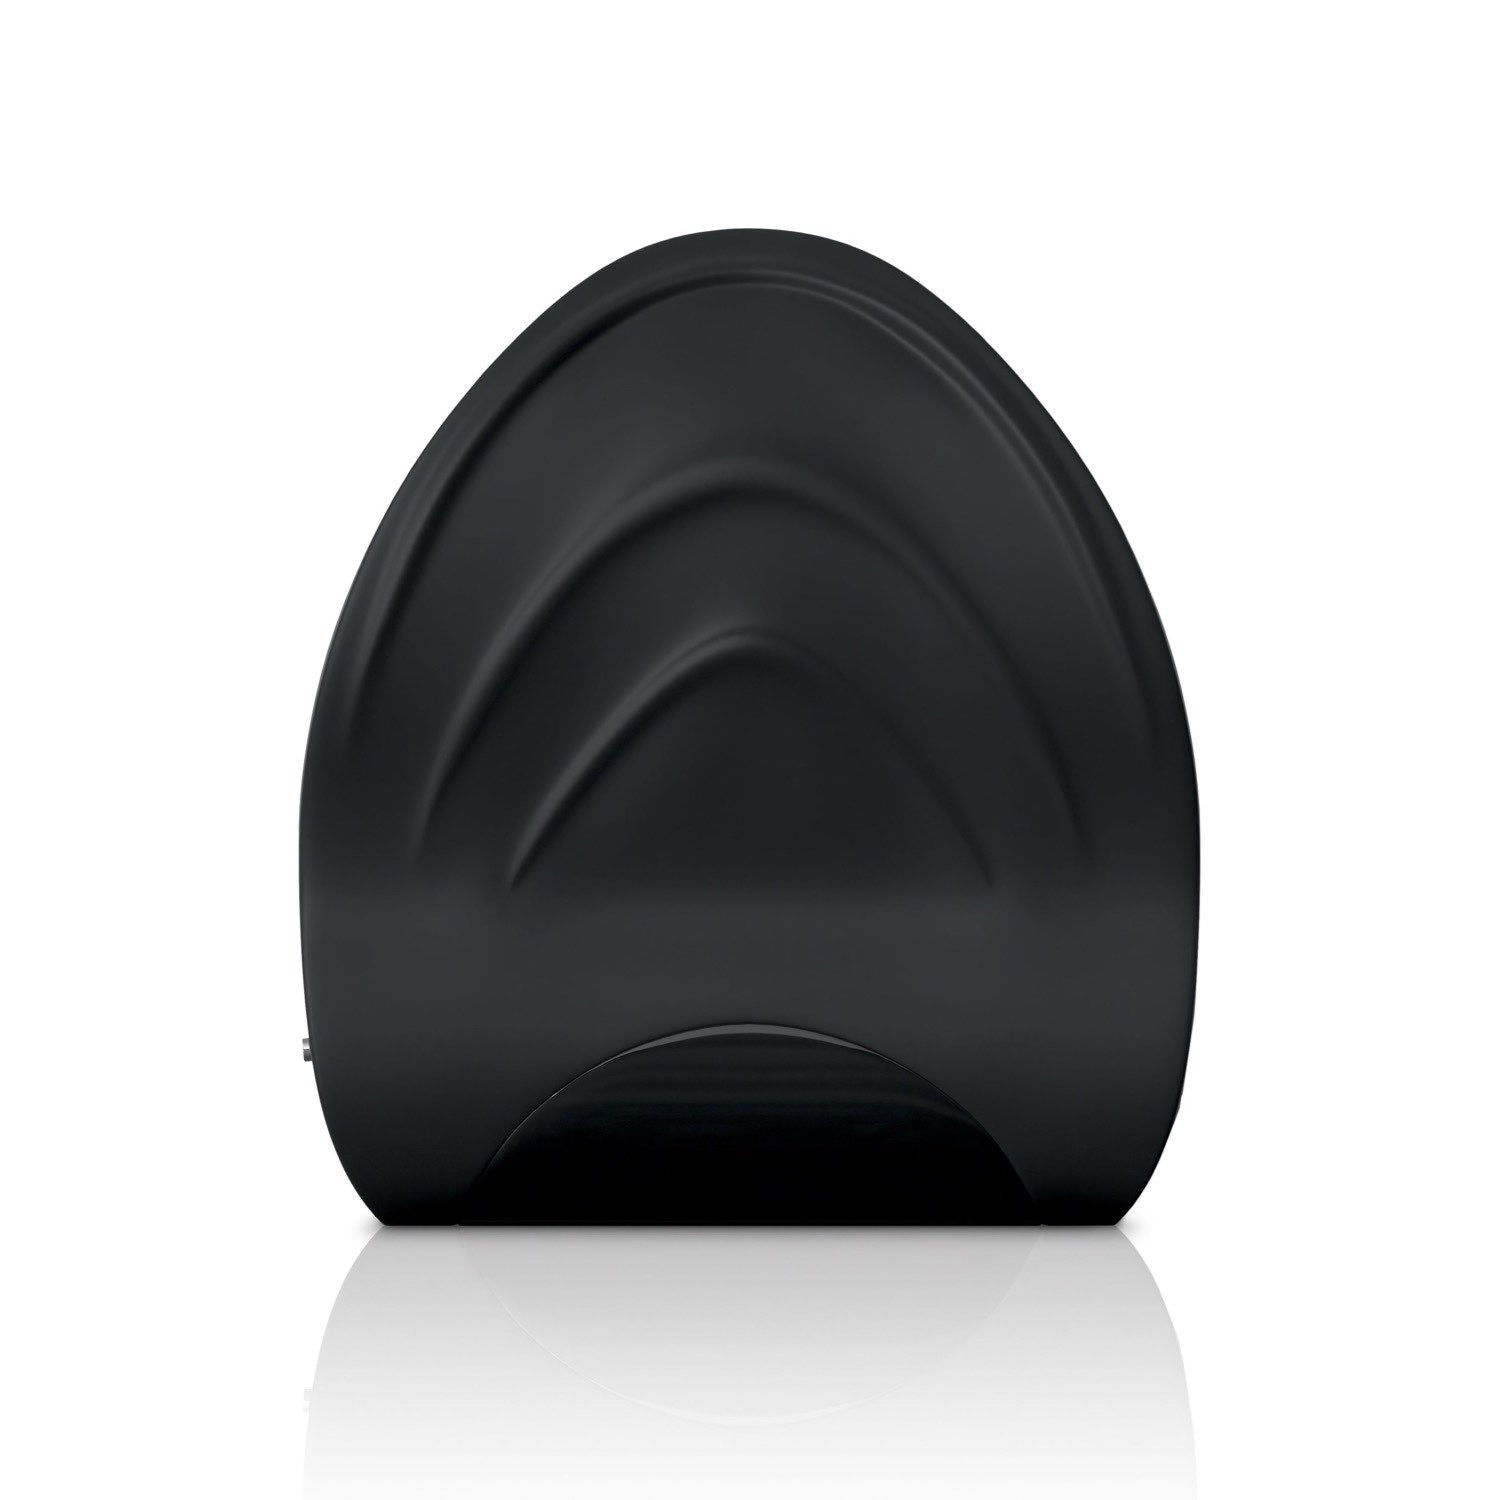 理查兹爵士 振动硅胶磨边训练器 - 黑色 USB 可充电自慰器 by Pipedream